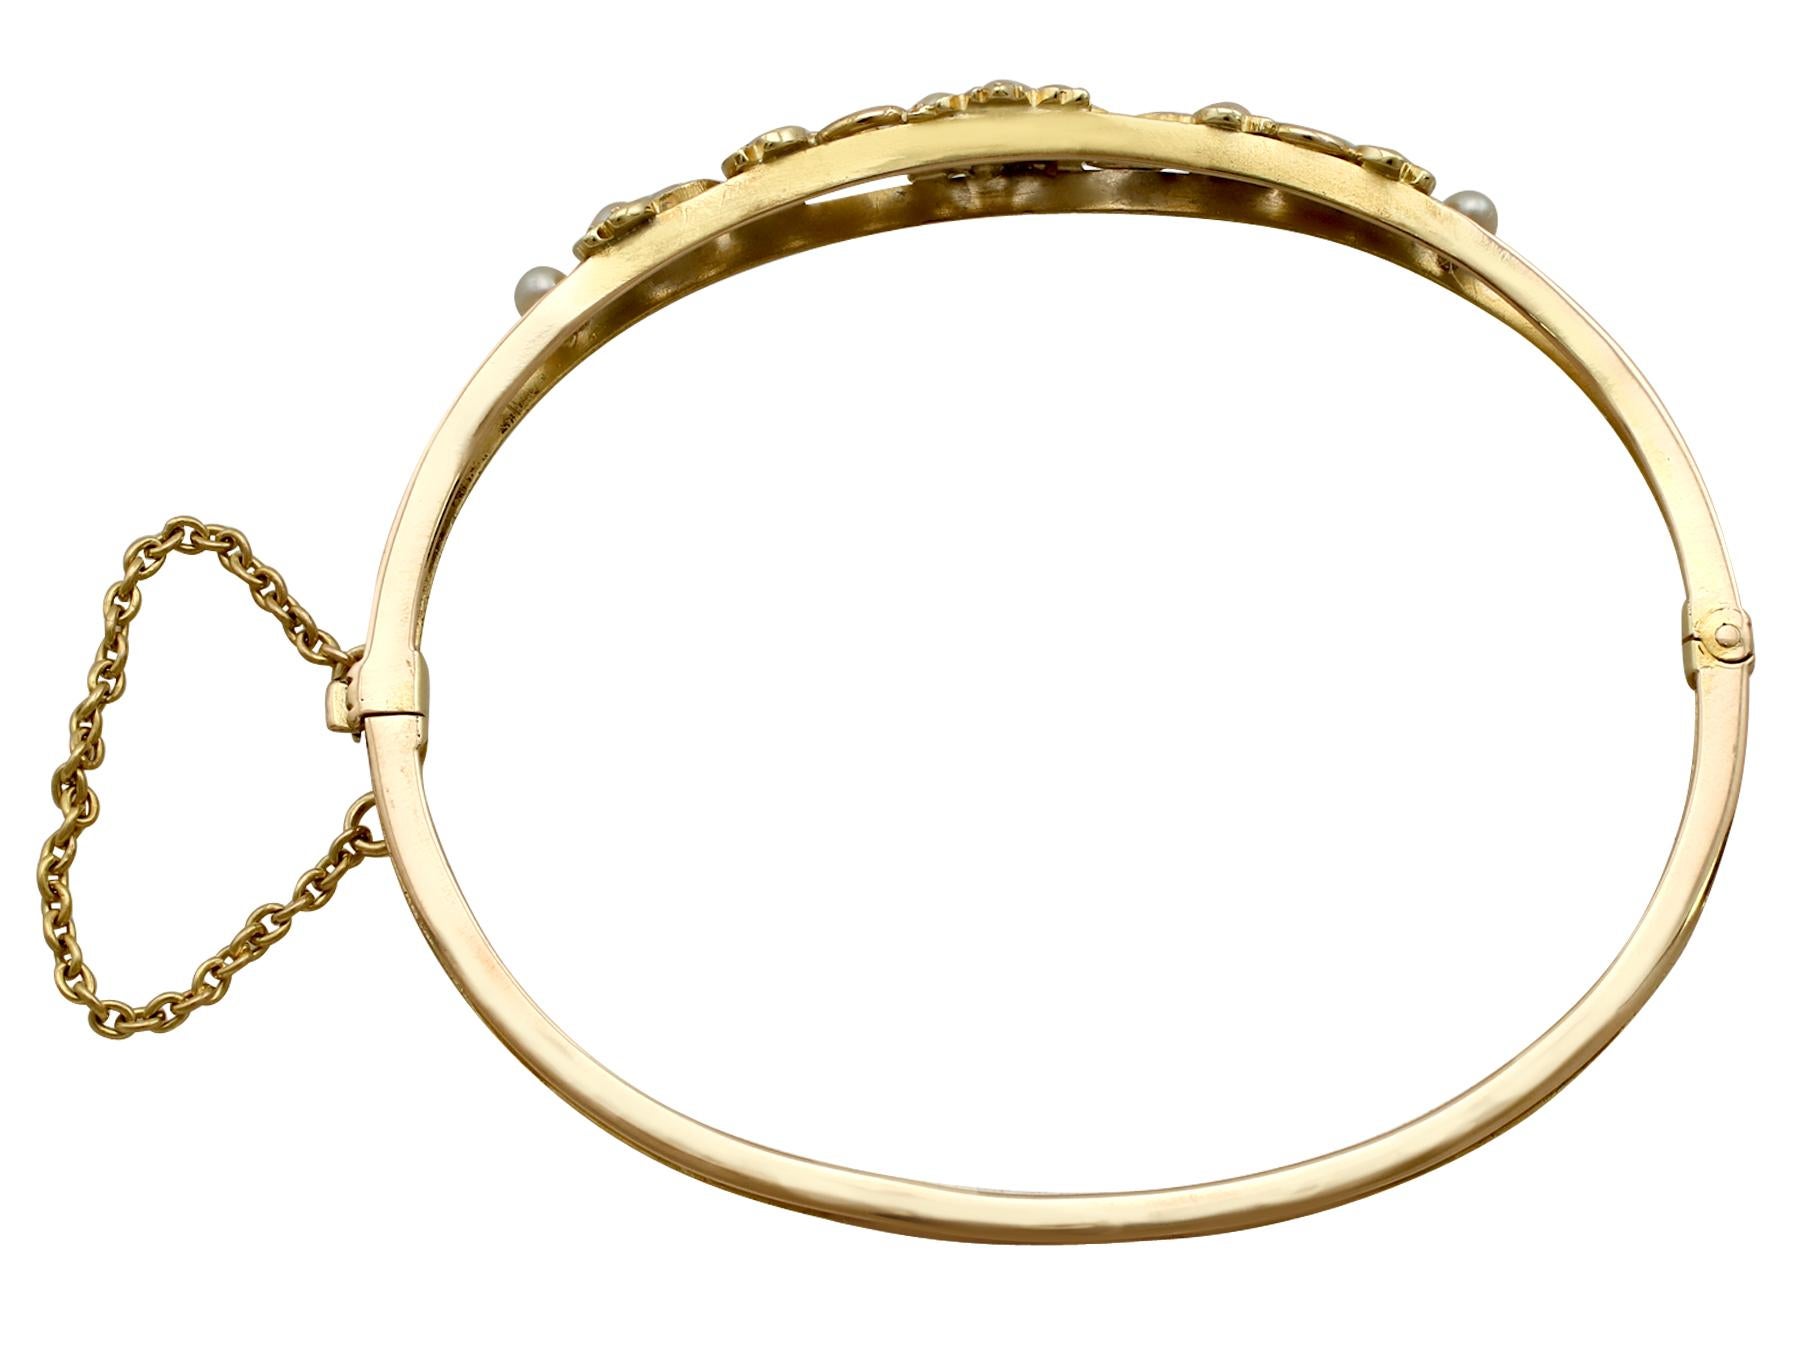 Un beau et impressionnant bracelet victorien ancien en perles de rocaille et or jaune 15 carats, qui fait partie de nos collections de bijoux anciens et de bijoux de succession.

Ce bracelet en perles de rocaille, fin et impressionnant, a été